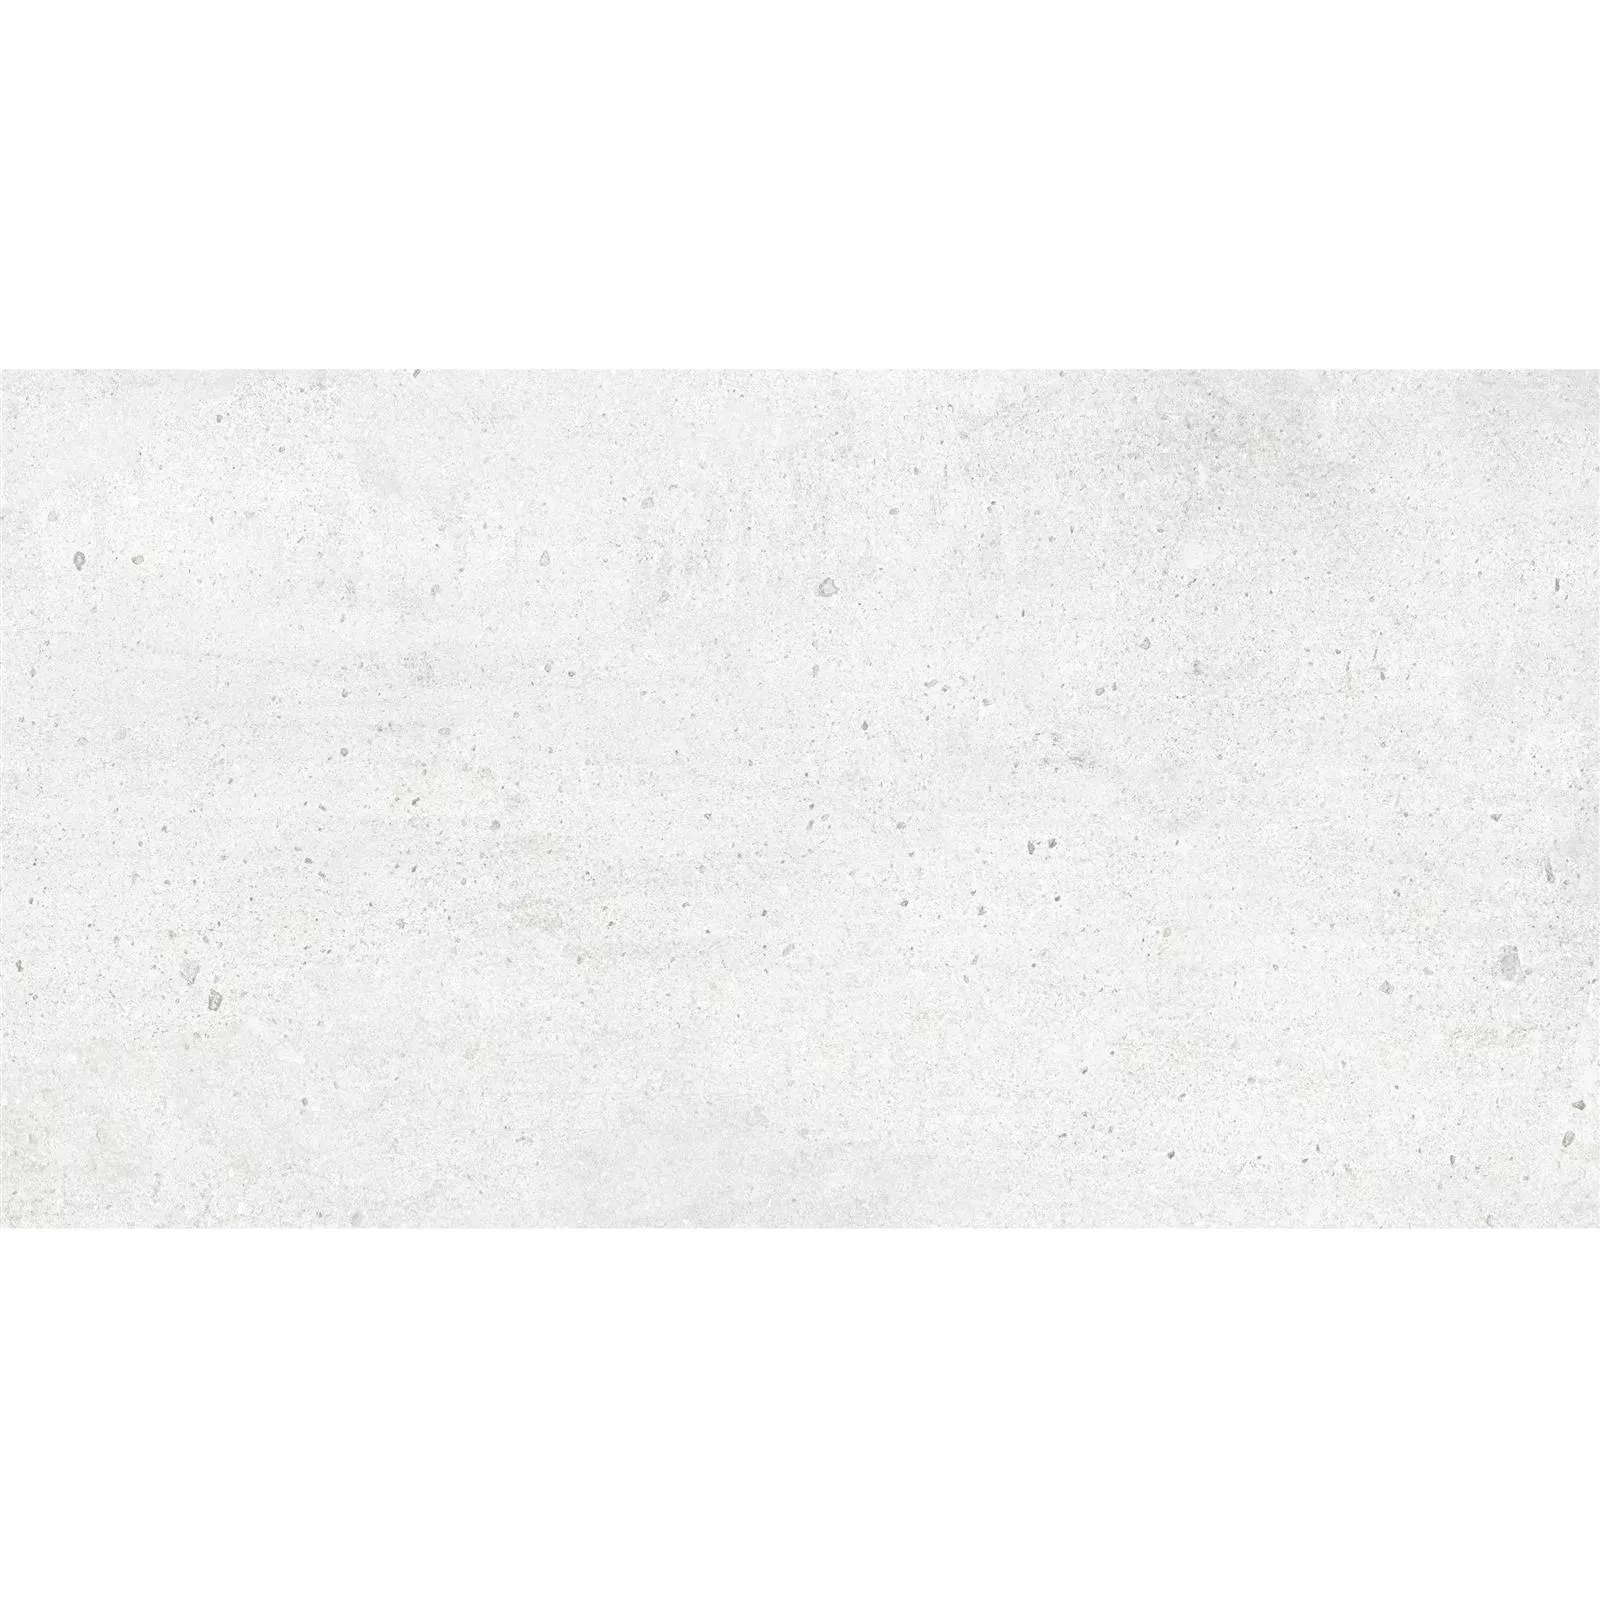 Πλακάκια Δαπέδου Freeland Πέτρινη Όψη R10/B Ασπρο 30x60cm